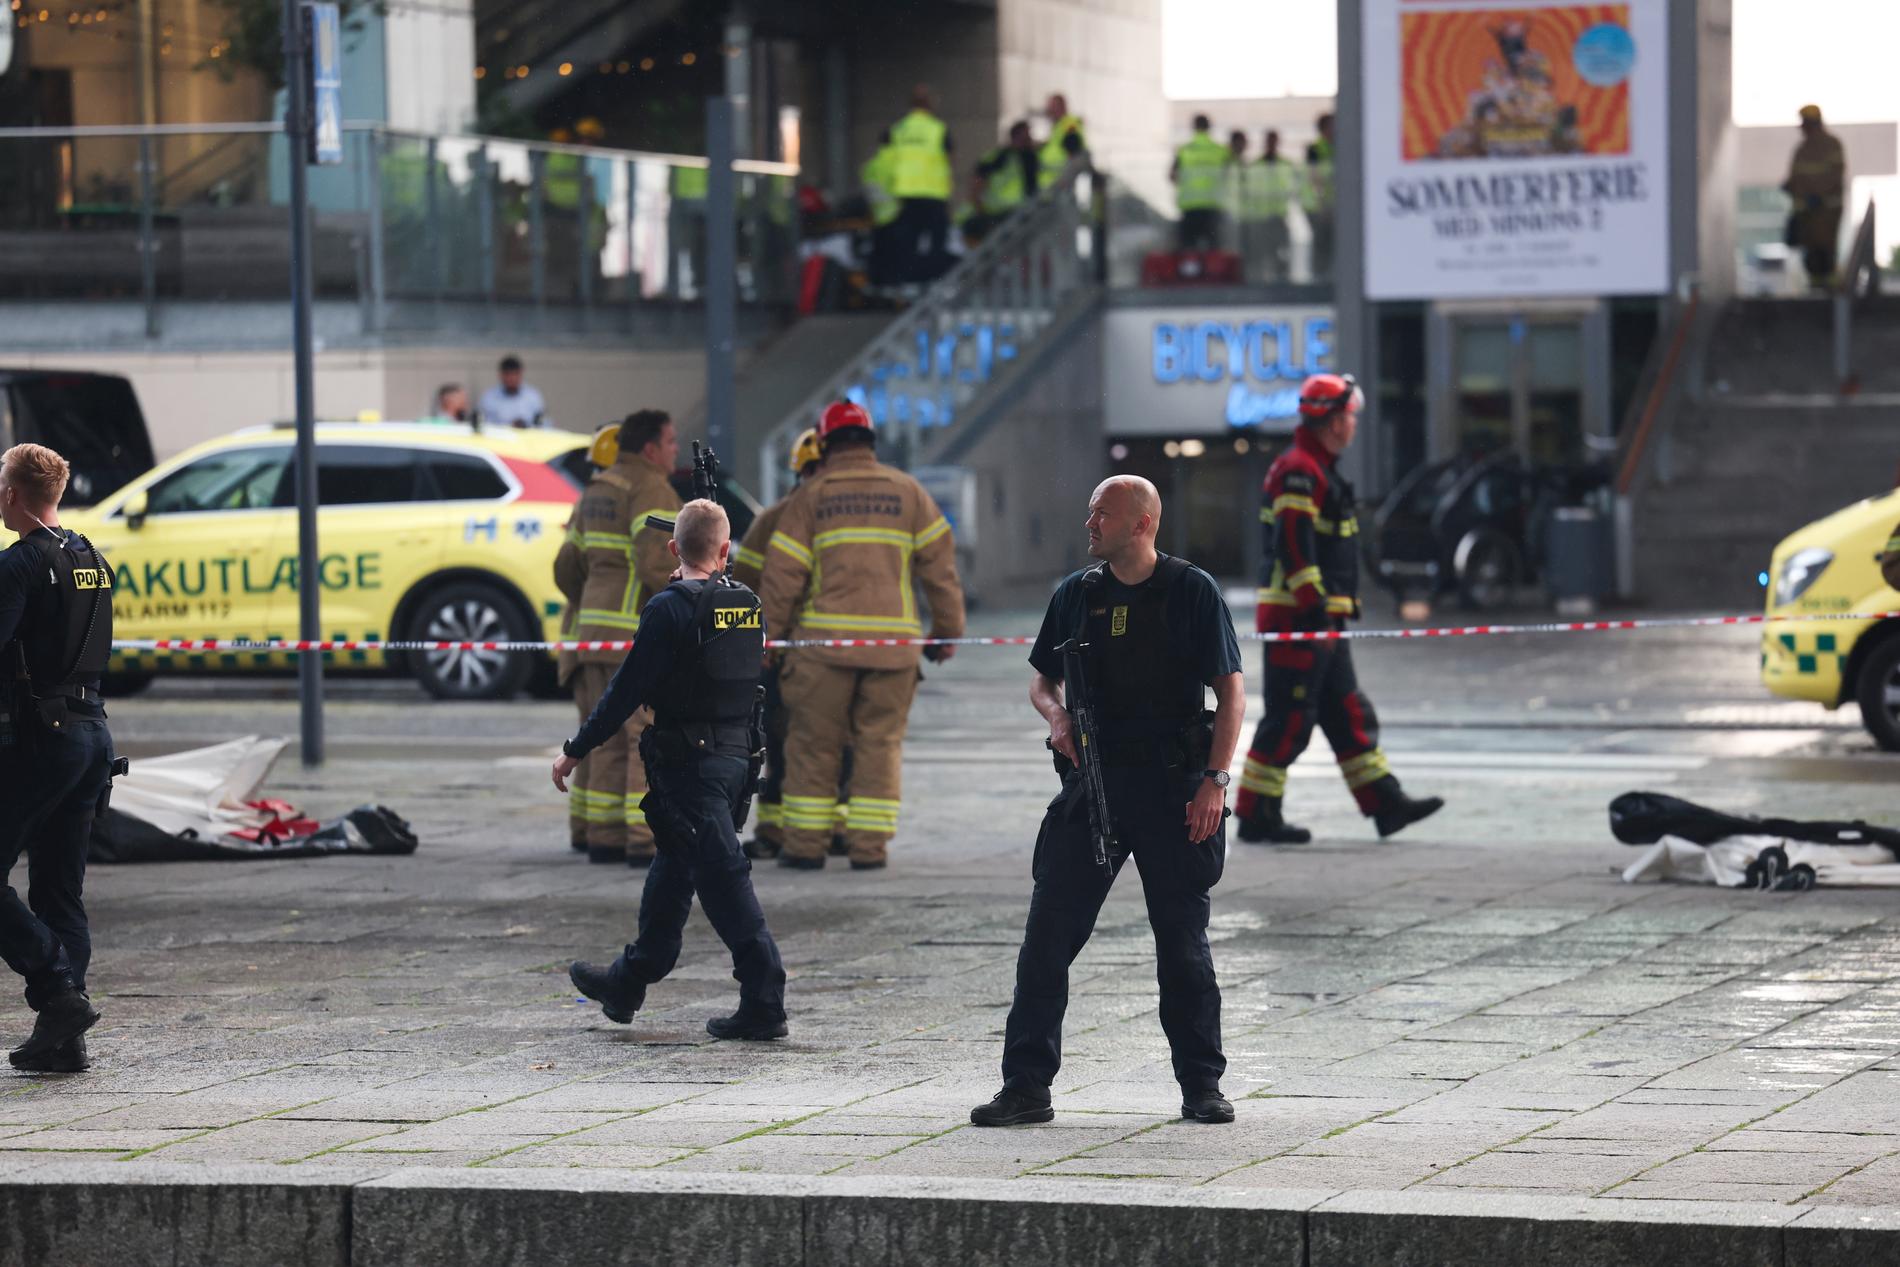 Polis och räddningsfordon i närheten av det köpcentrum där flera personer sköts ihjäl på söndagskvällen vid en skottlossning på ett köpcentrum i Köpenhamn.